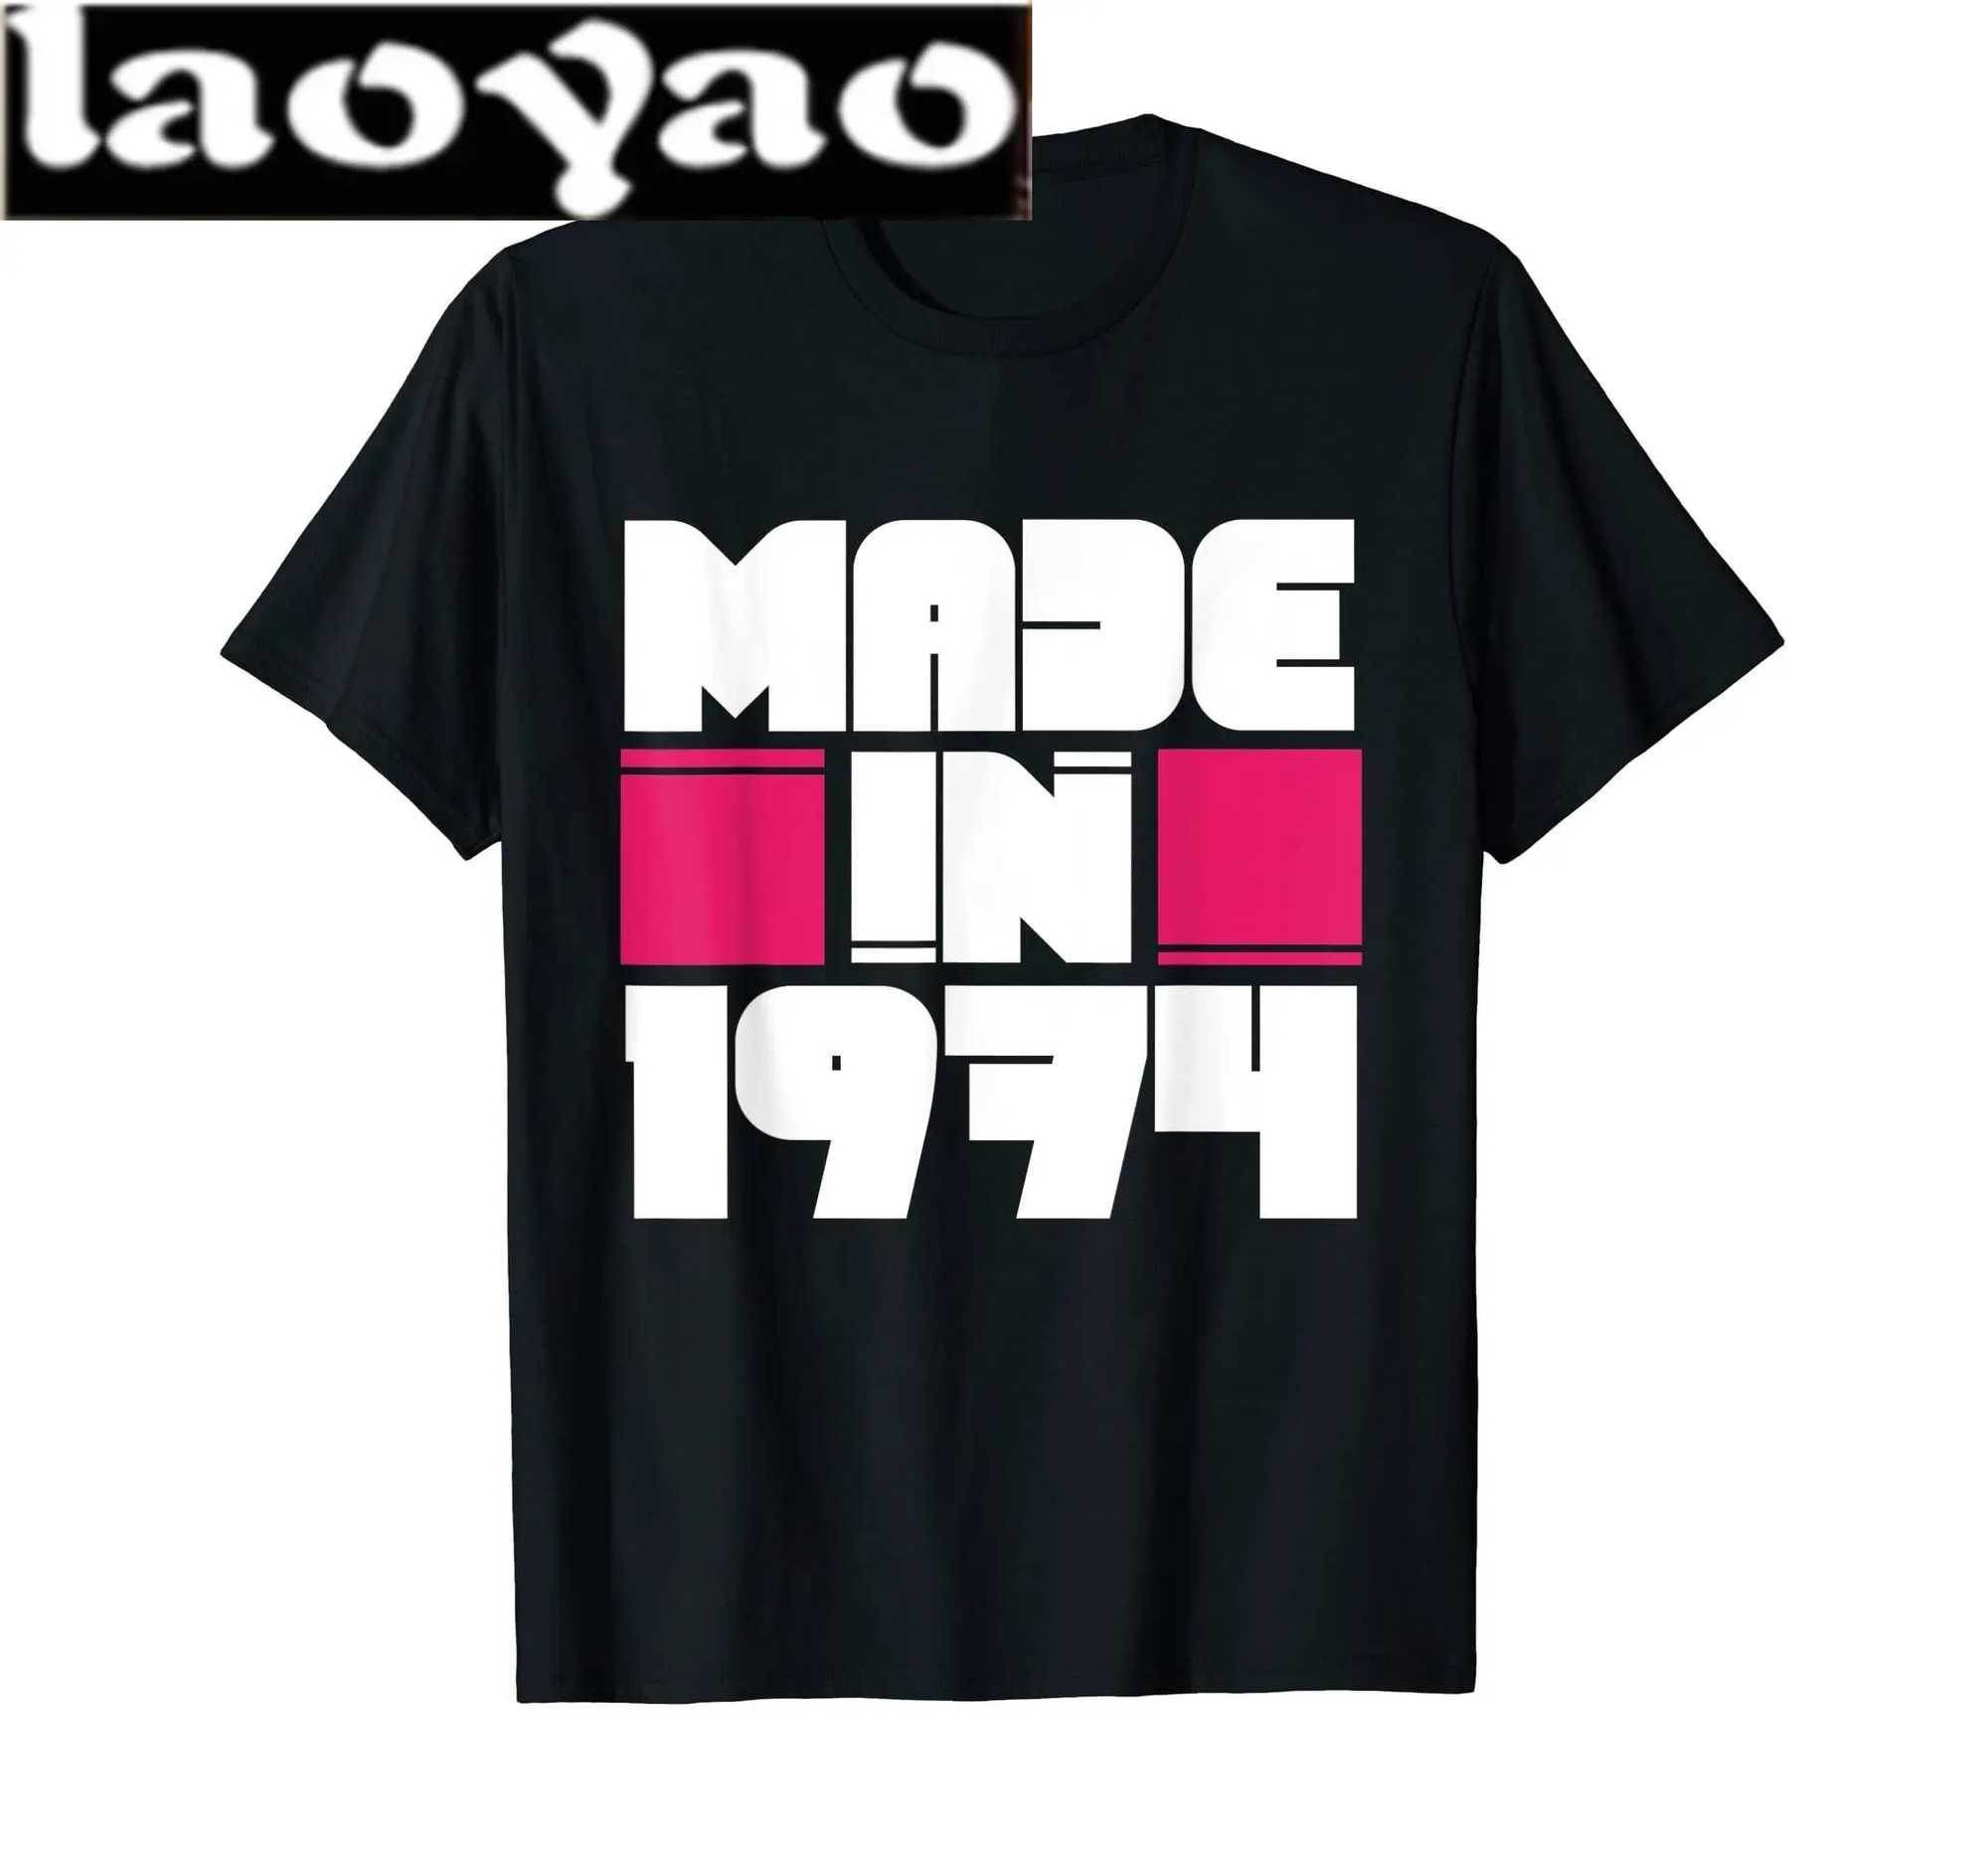 Męskie koszulki klasyczne vintage urodzone w 1974 roku w stylu retro lat 70.